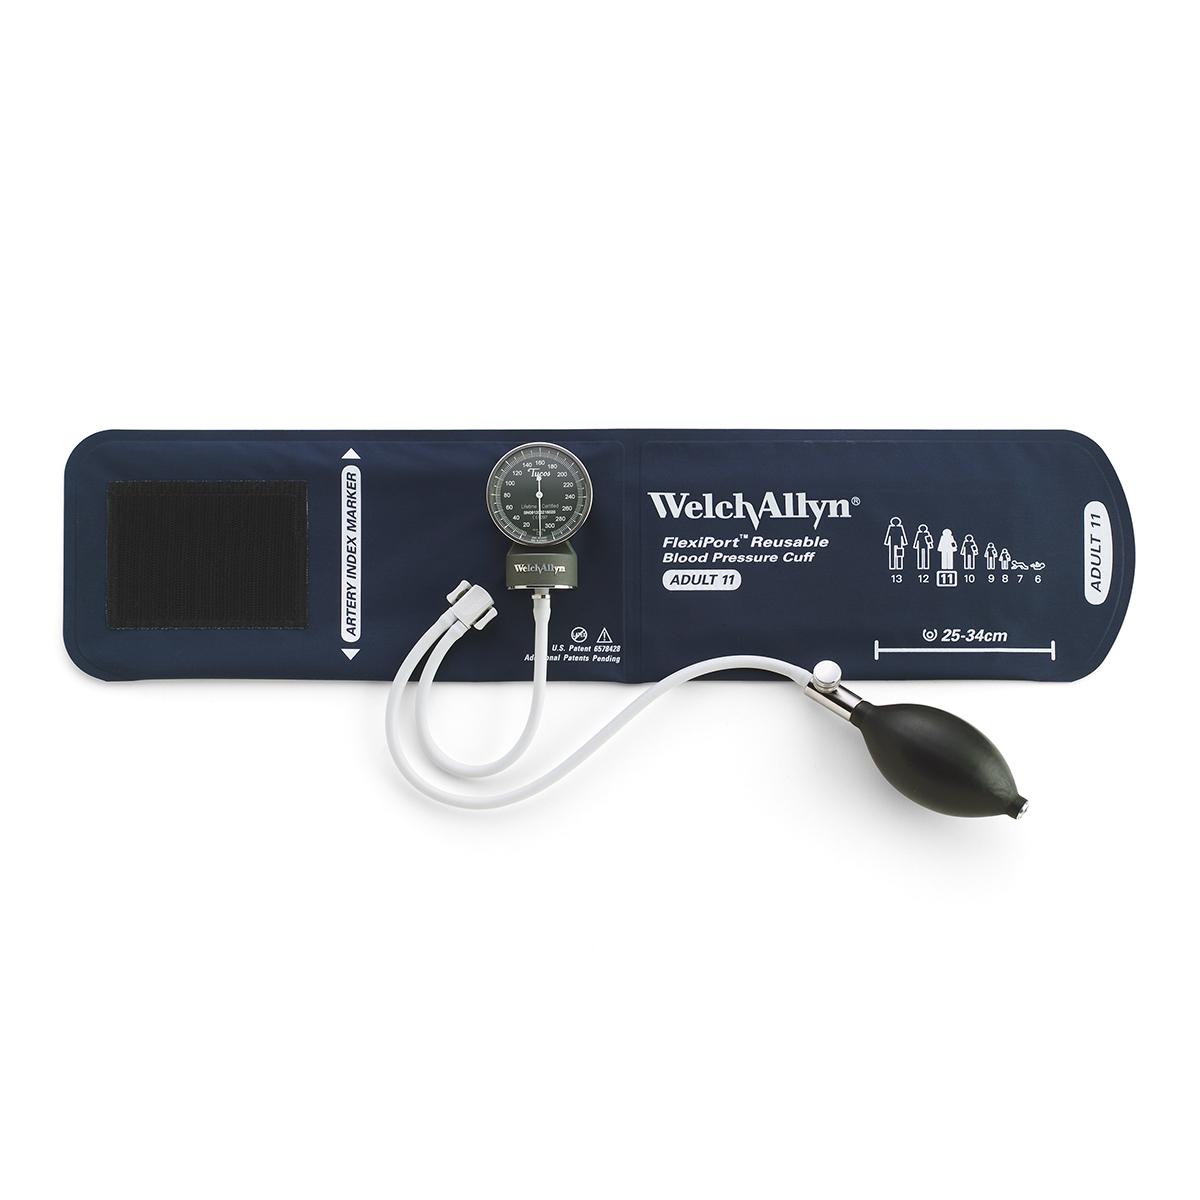 En fickaneroid i Welch Allyn DS48A Platinum-serien fäst på en svart Welch Allyn-blodtrycksmanschett i vuxenstorlek 11.